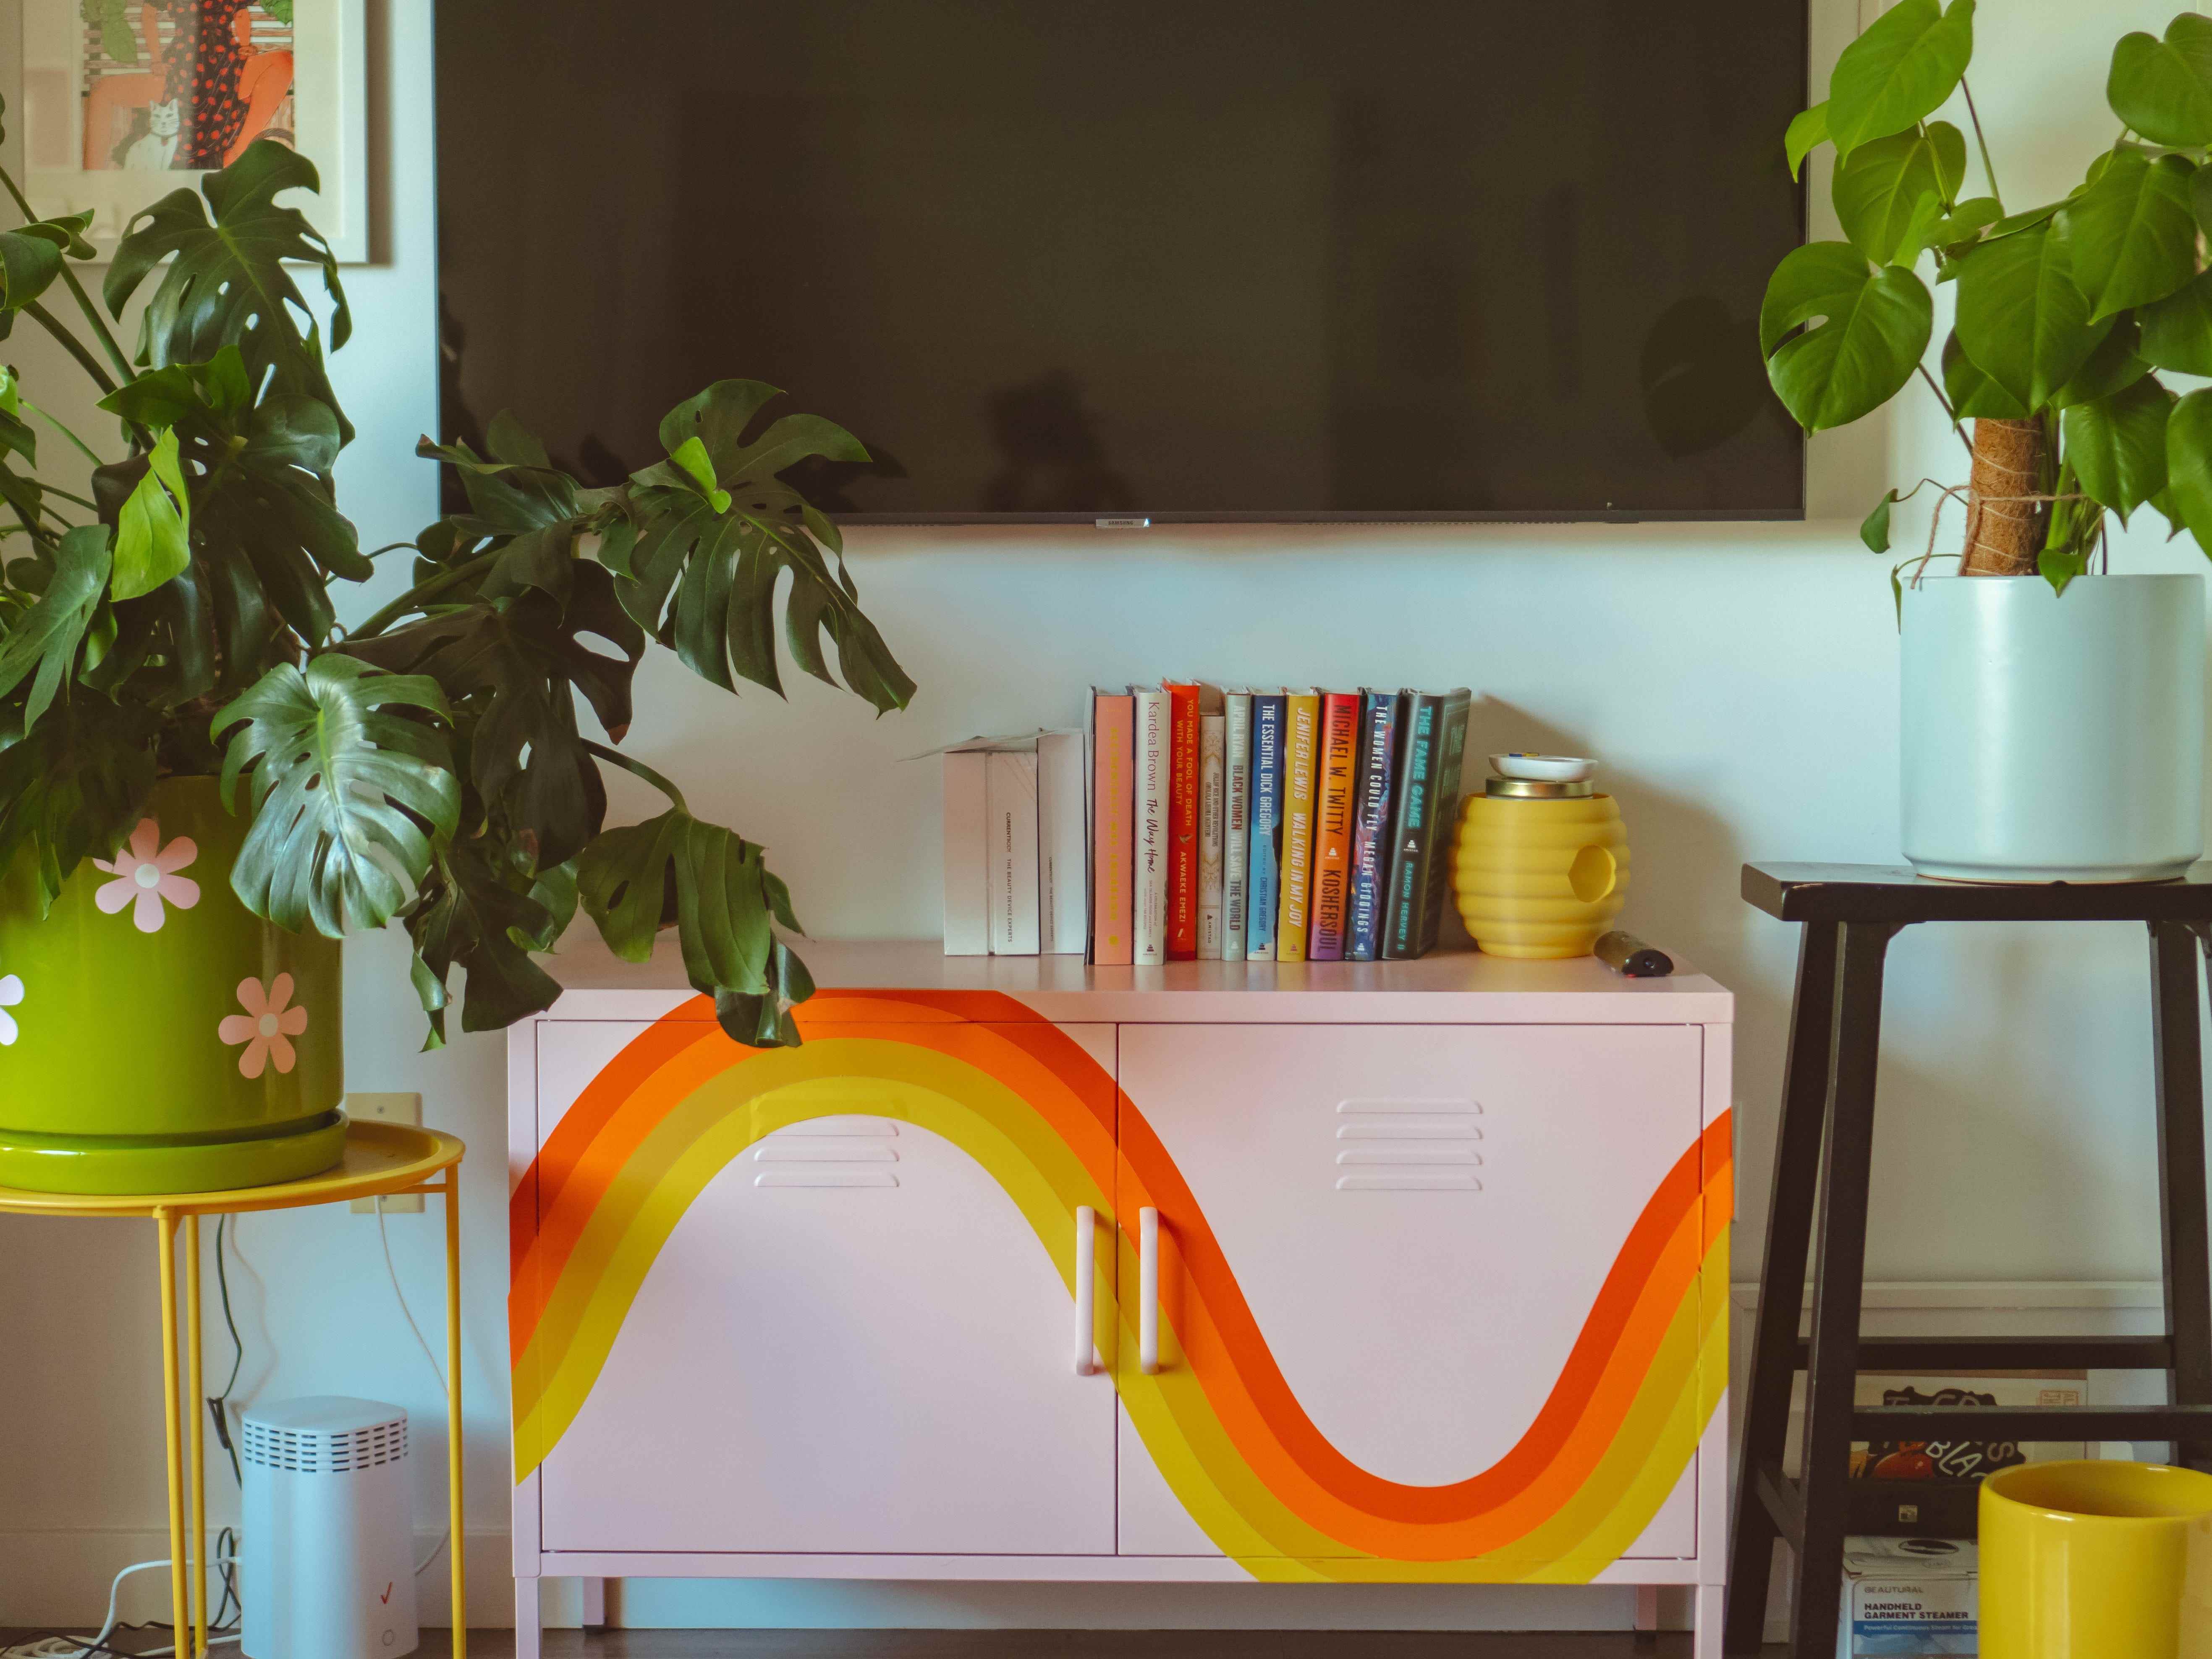 Ein rosafarbener Schließfachschrank mit einem orange-gelben Regenbogen-Aufkleber darauf